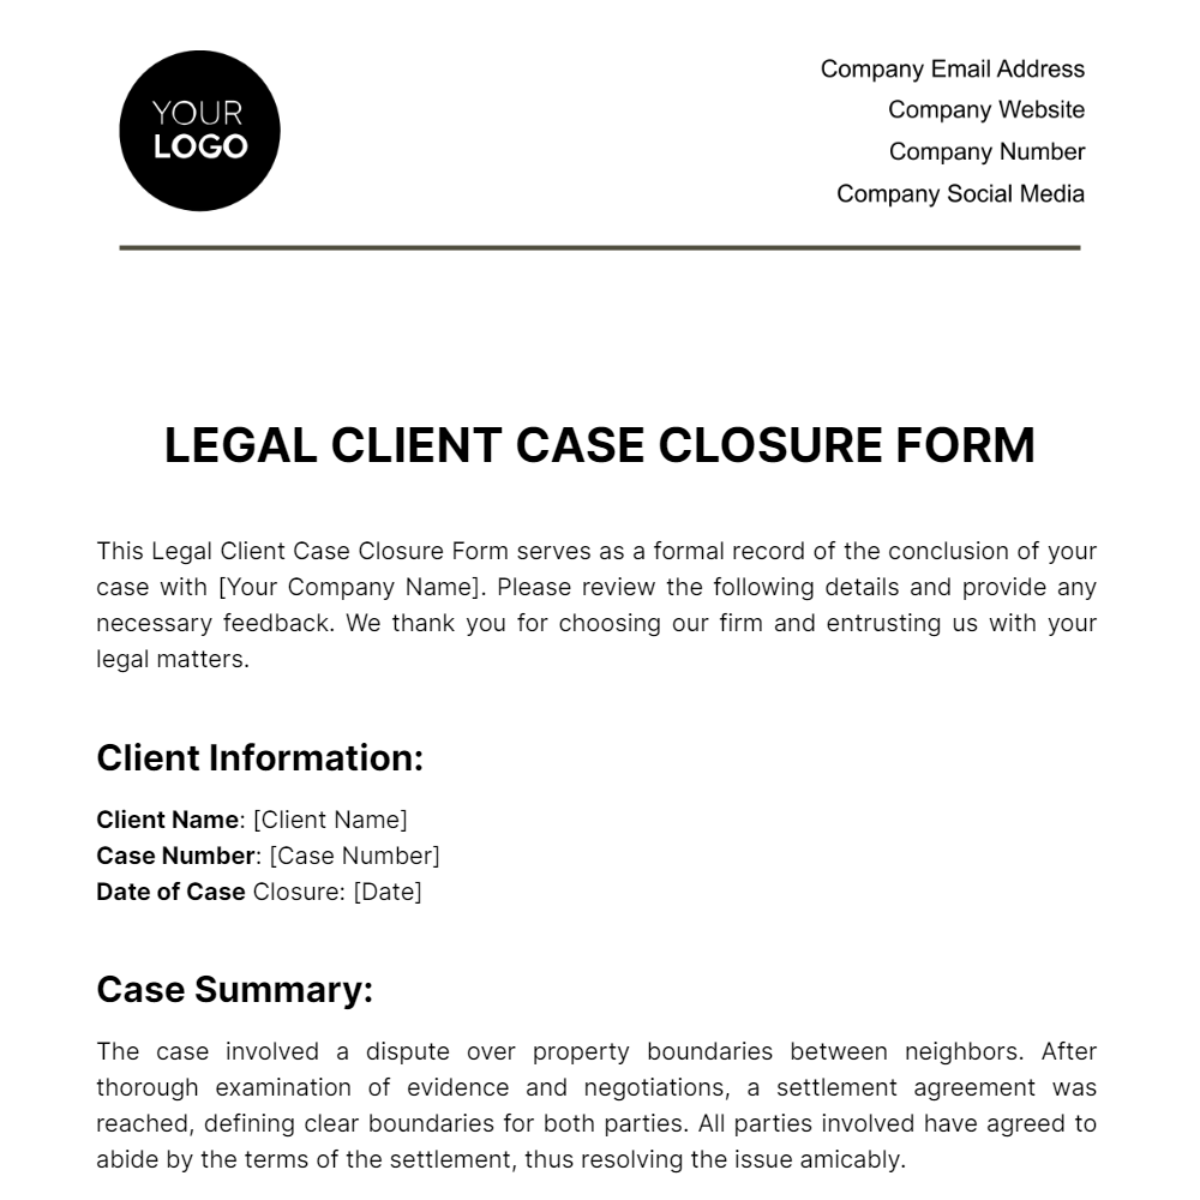 Legal Client Case Closure Form Template